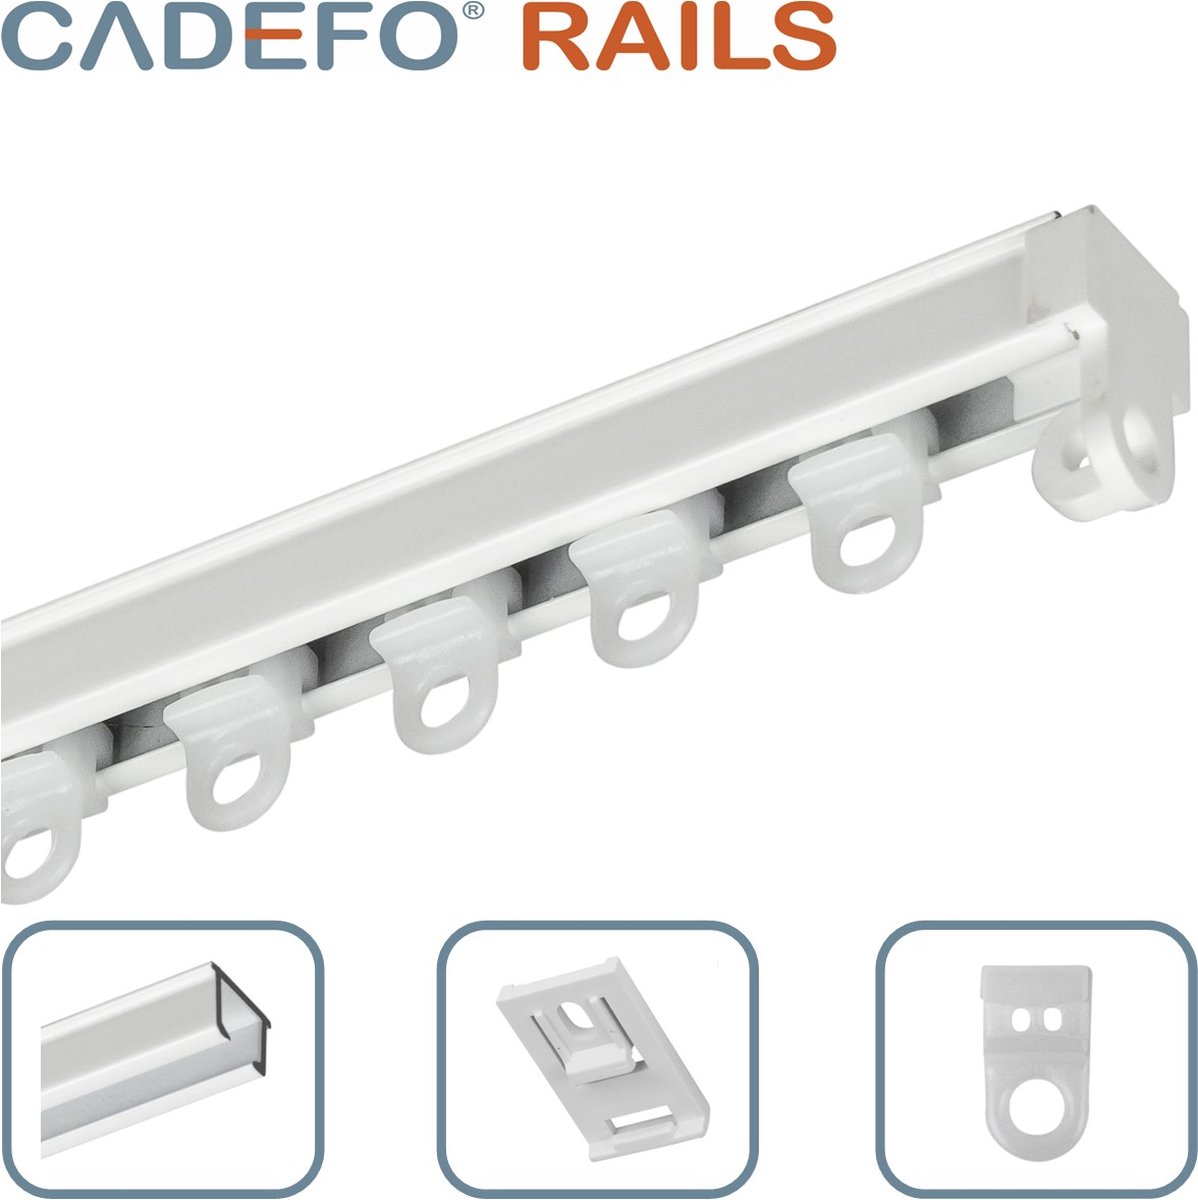 CADEFO RAILS (501 - 550 cm) Gordijnrails - Compleet op maat! - UIT 1 STUK - Leverbaar tot 6 meter - Plafondbevestiging - Lengte 529 cm